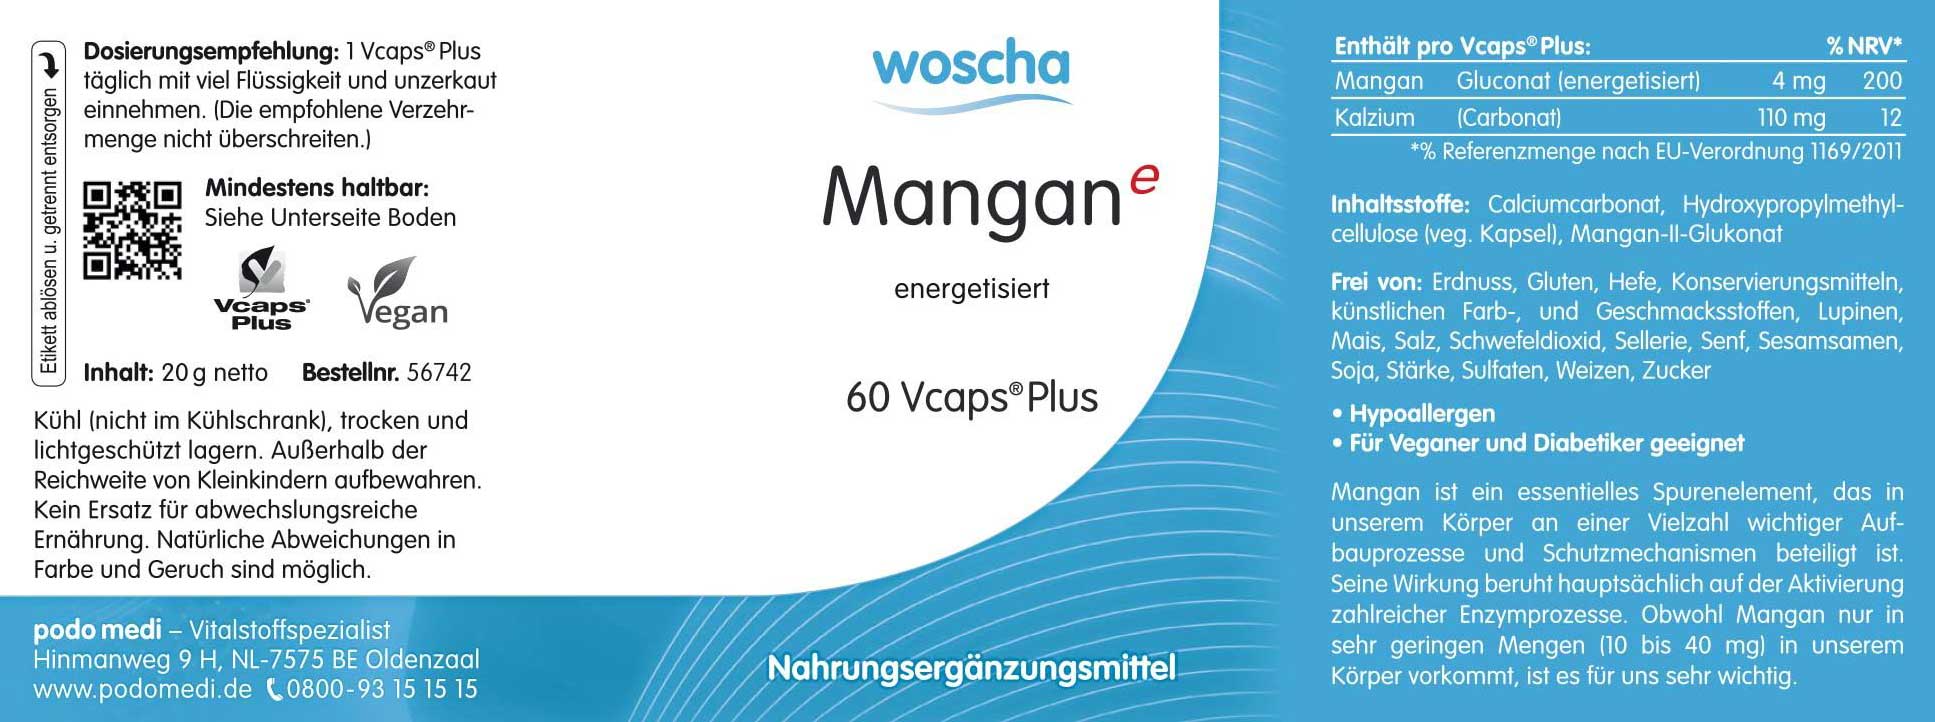 Woscha Mangan energetisiert von podo medi beinhaltet 60 Kapseln Etikett